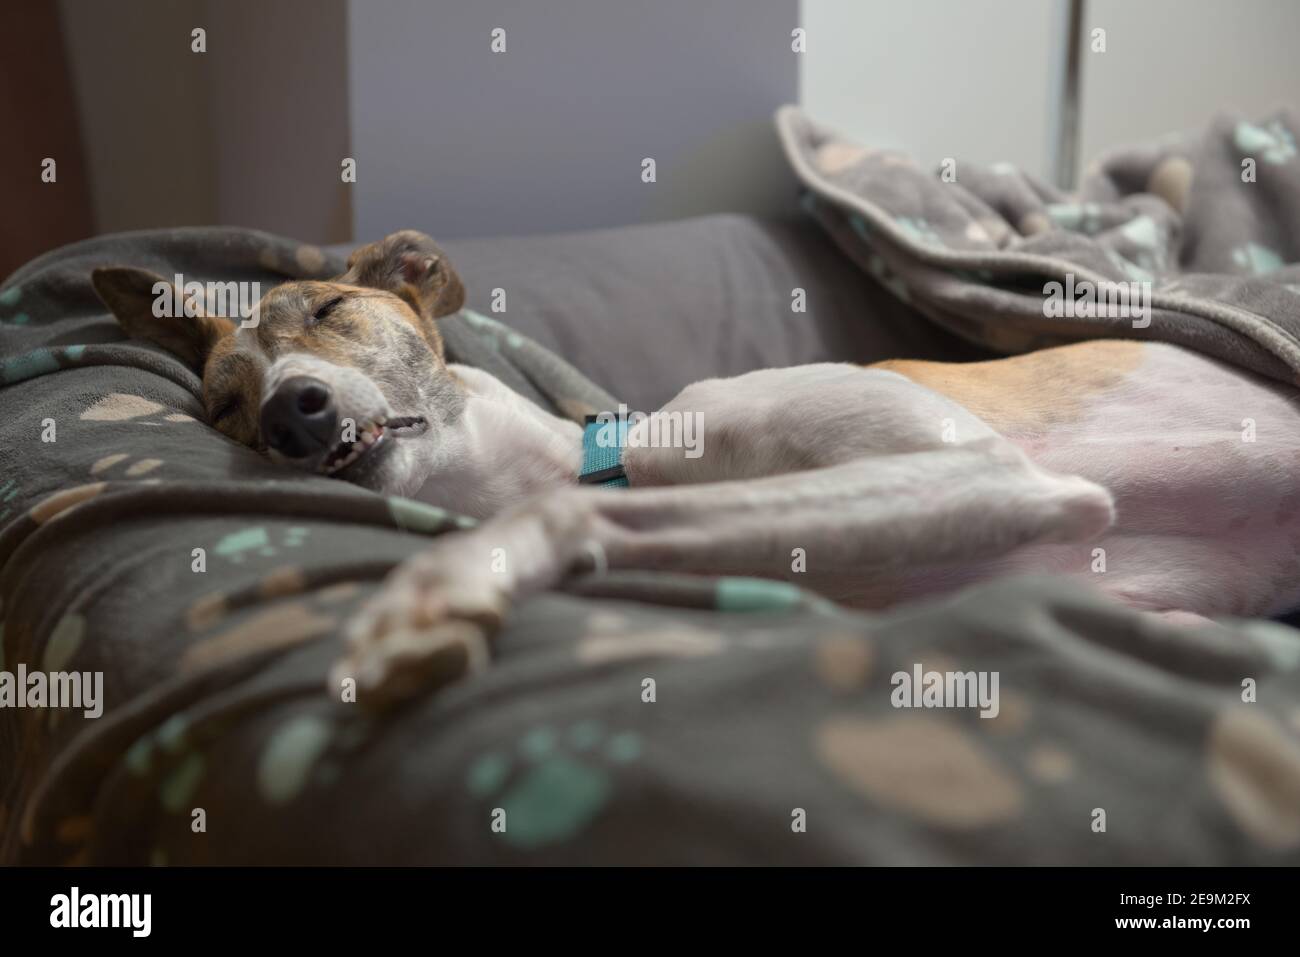 In einem tiefen Schlaf streckt sich eine große weibliche Windhundhündin mit einem ungewöhnlichen Gesicht in ihrem Hundebett aus. Augen geschlossen und Zähne gezeigt, wie sie schlummert. Stockfoto